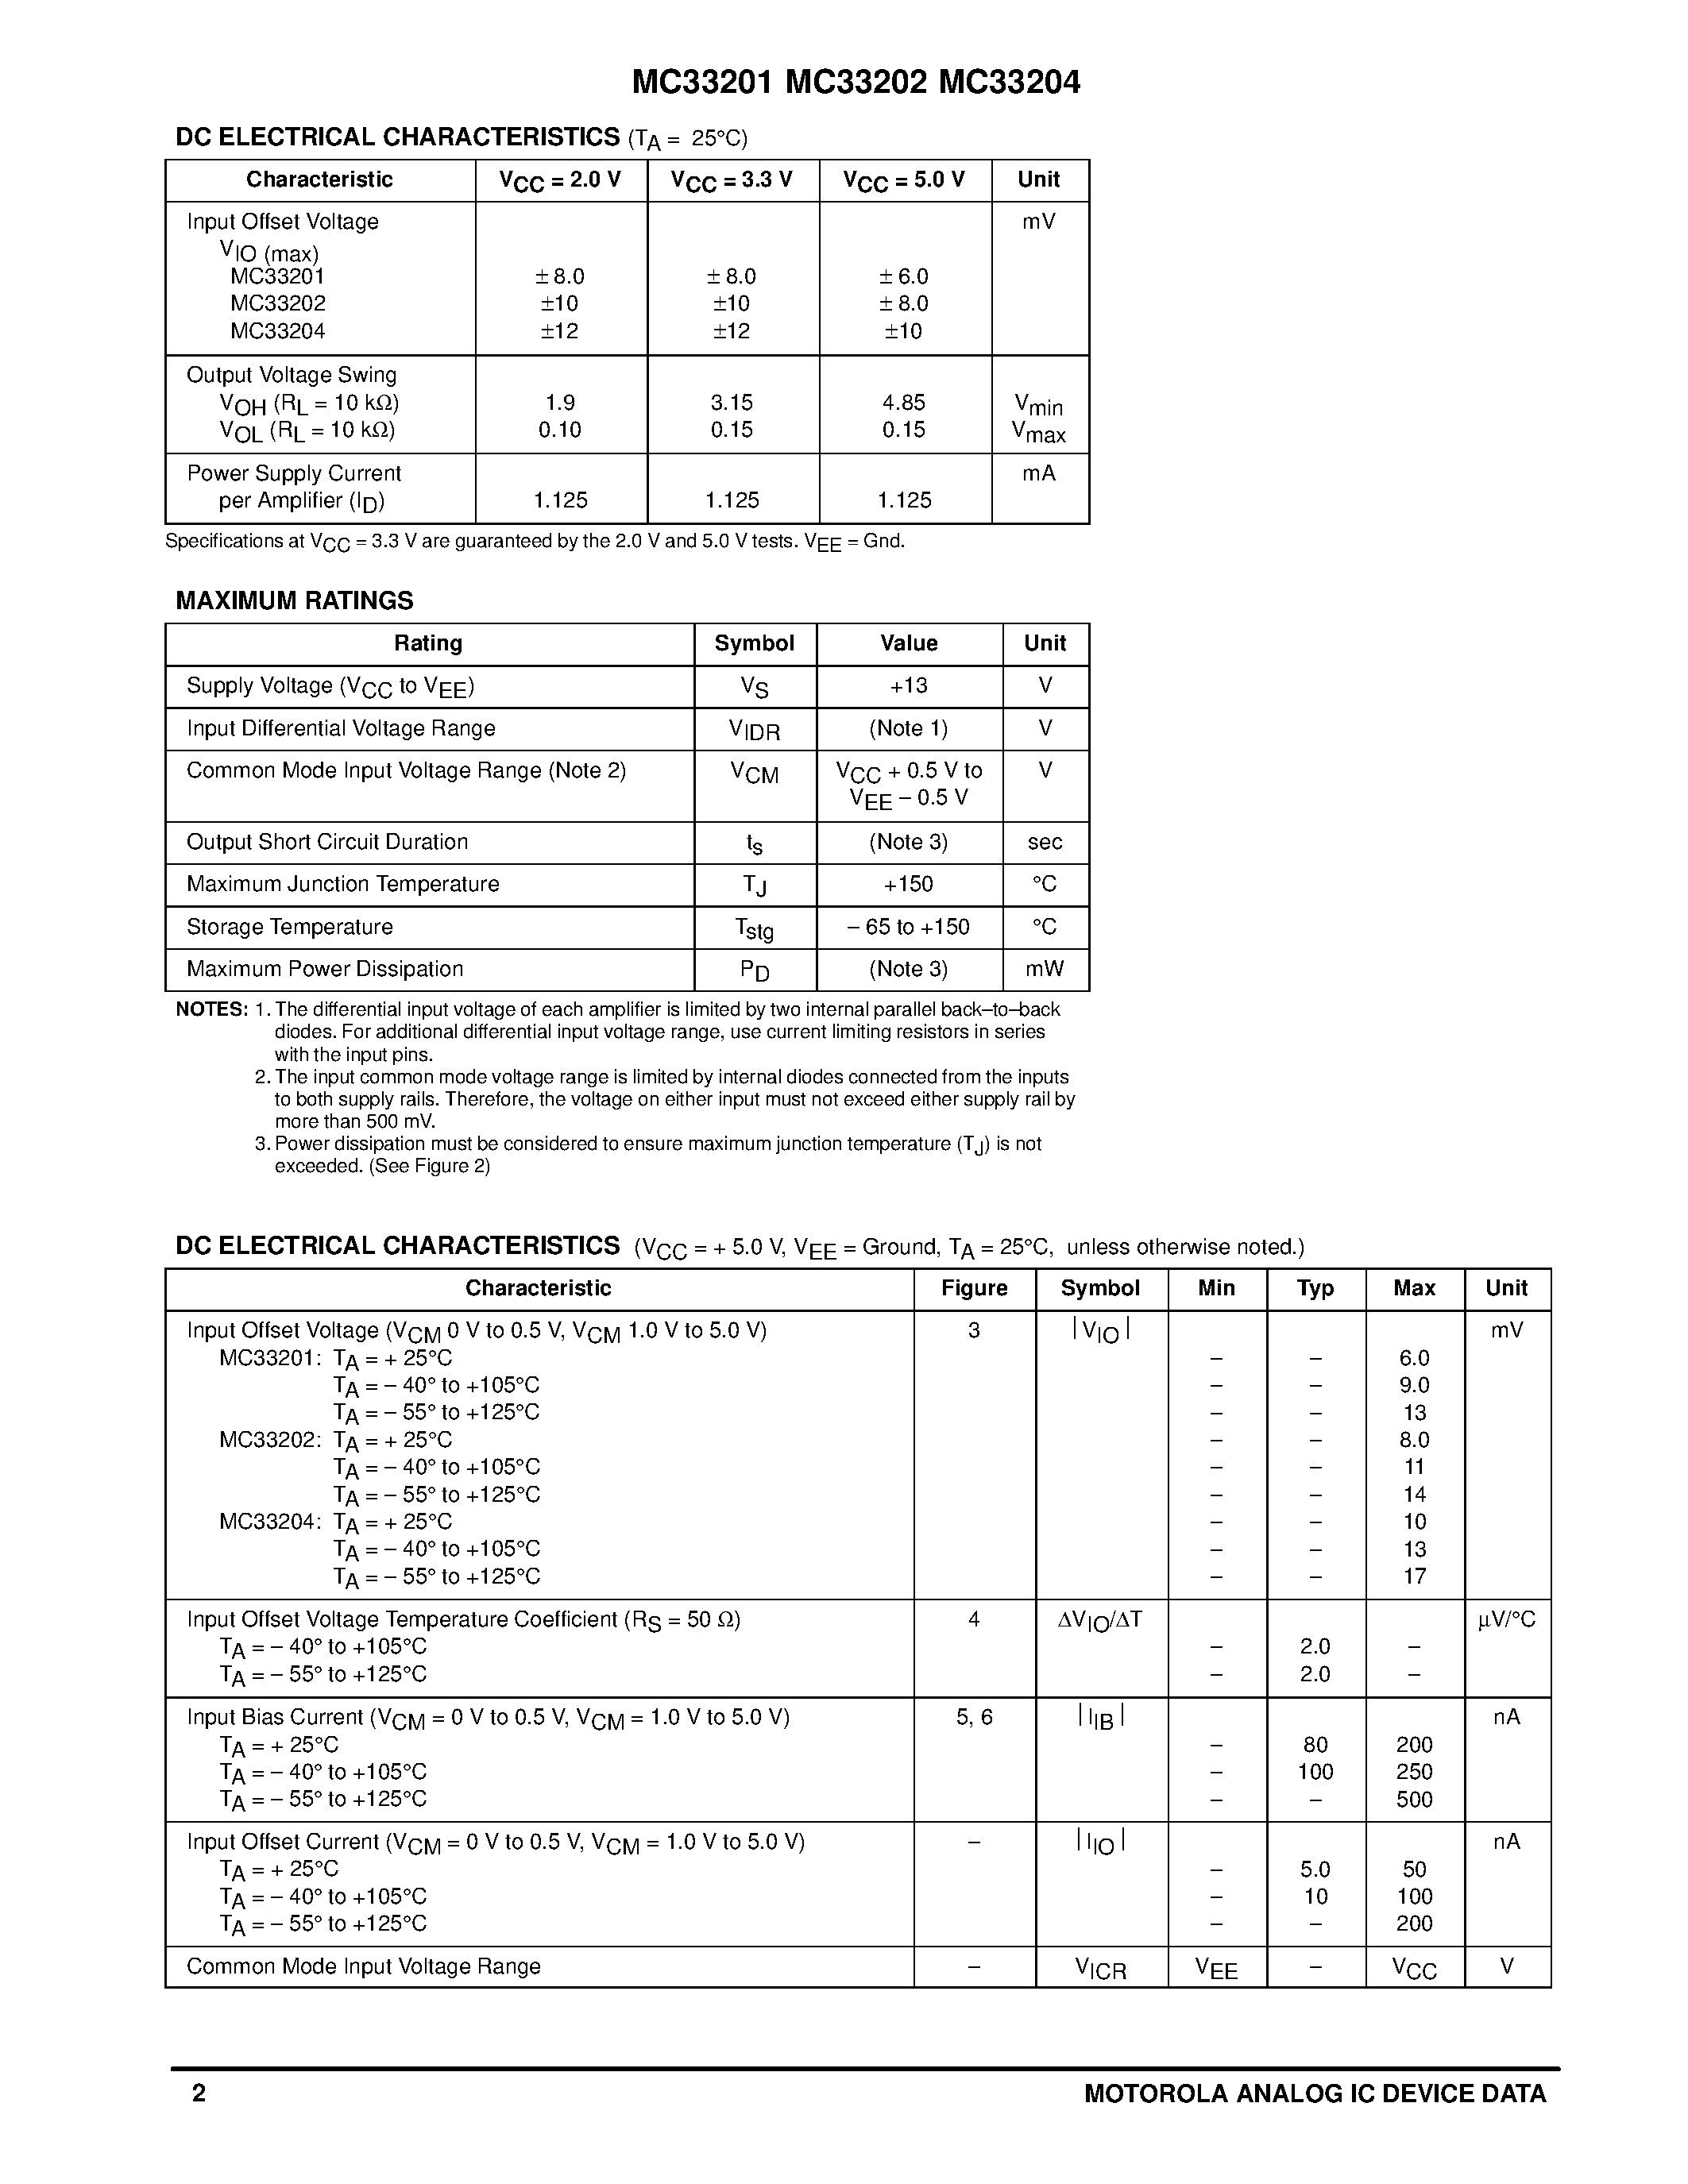 Даташит MC33201 - (MC33201 - MC33204) Amplifiers and Comparators страница 2